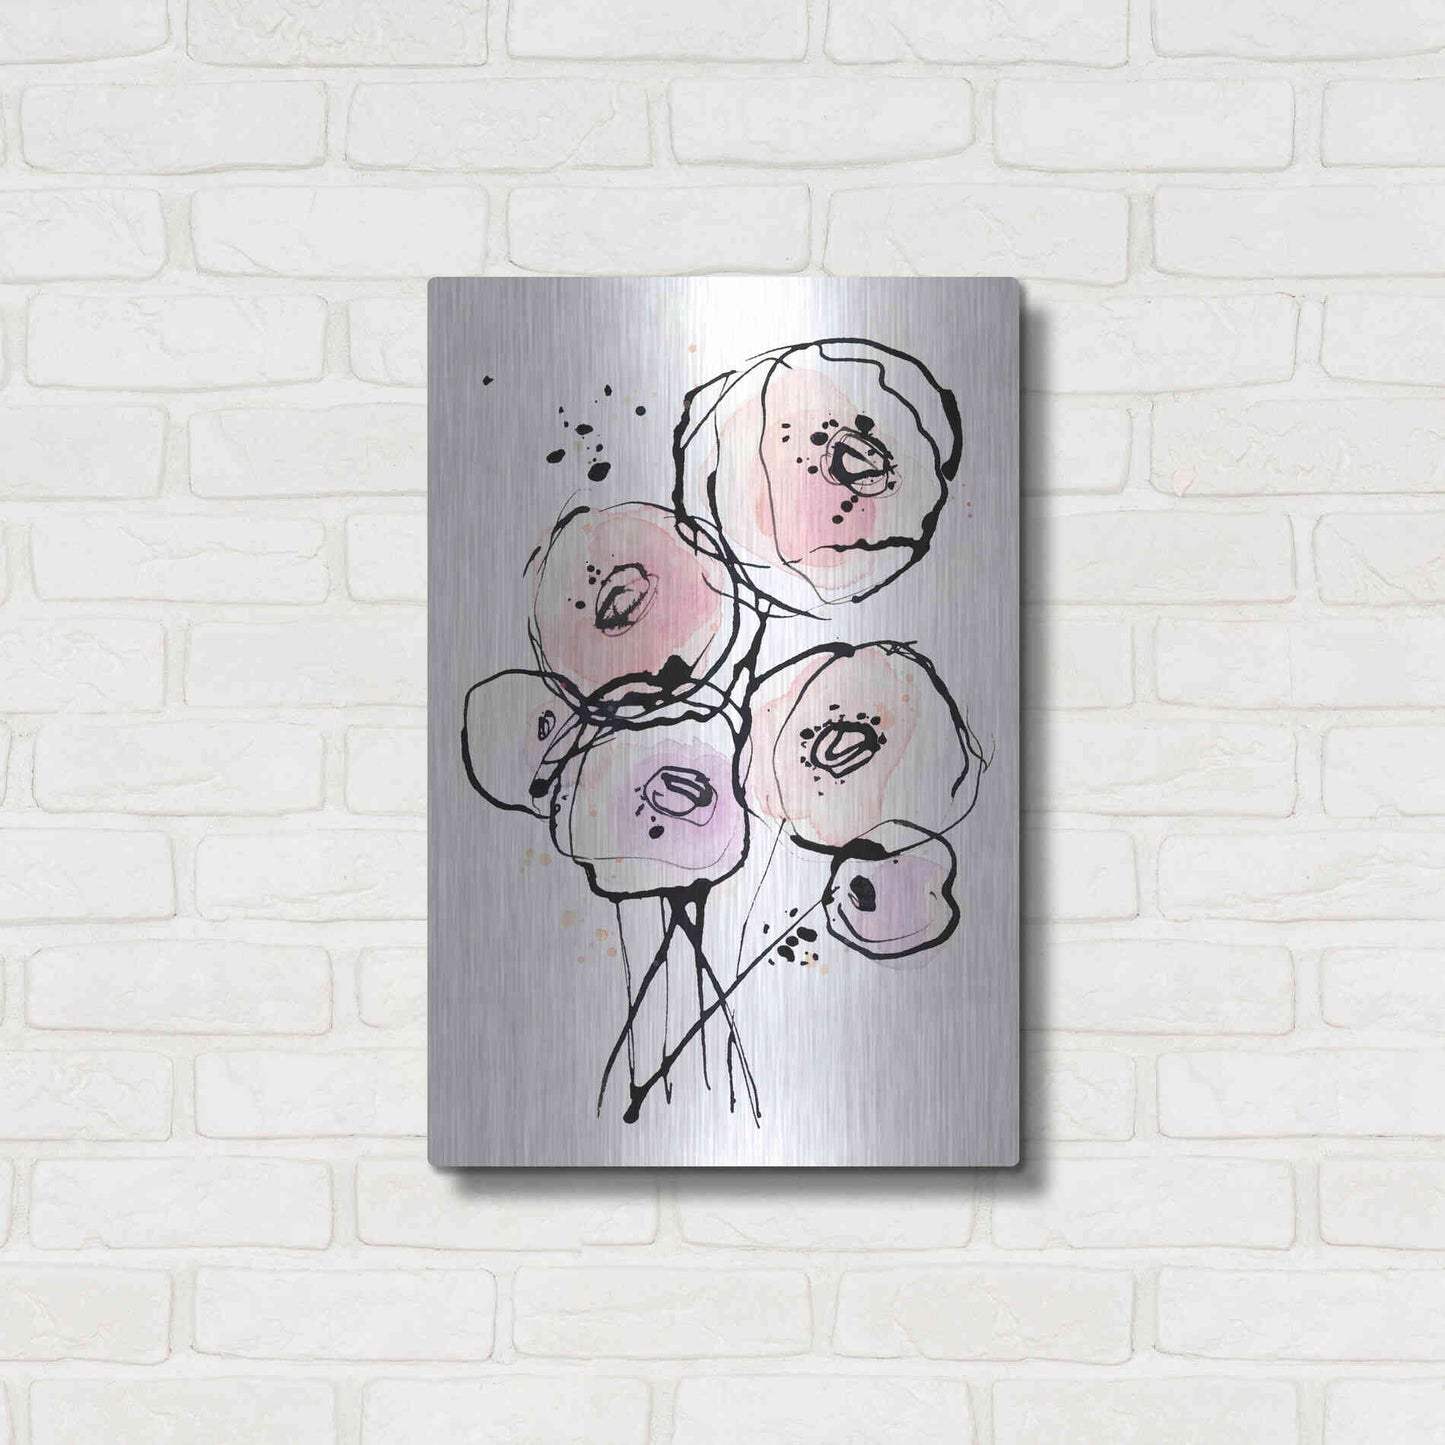 Luxe Metal Art 'Pink Mod 2' by Lesia Binkin Metal Wall Art,16x24